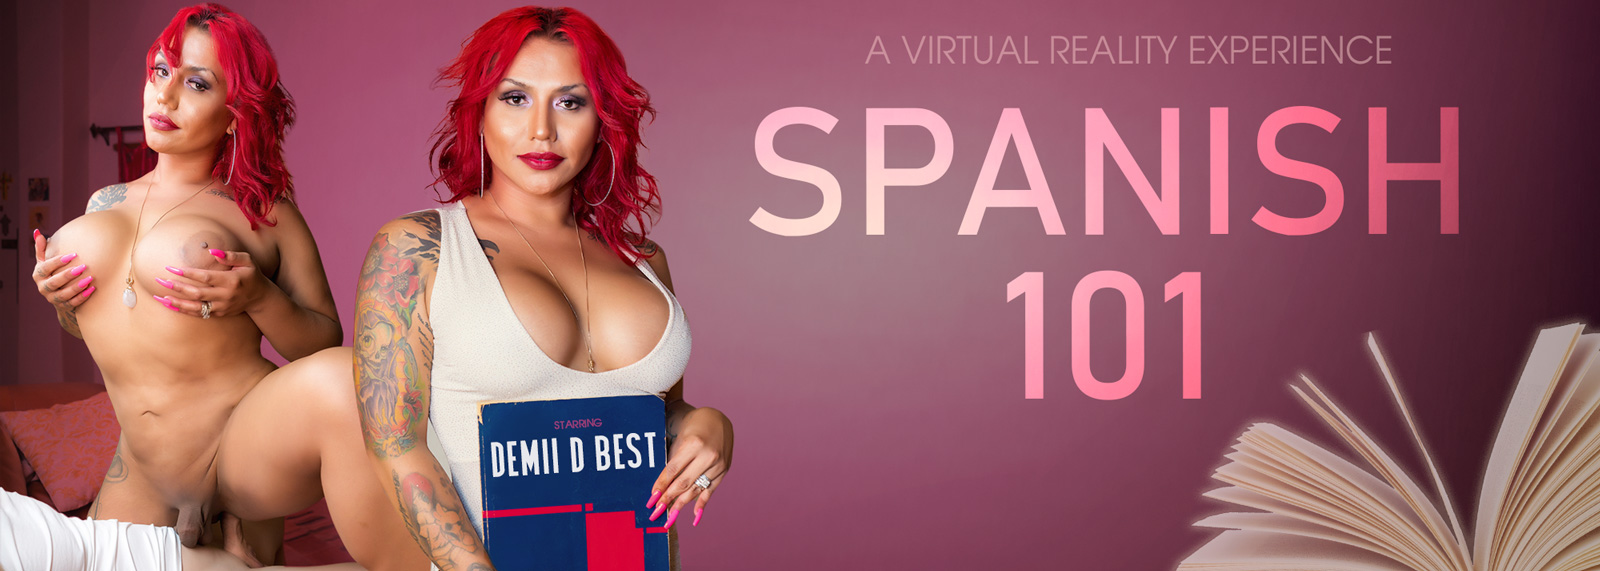 Spanish 101 - VR Porn Video, Starring: Demii D Best VR